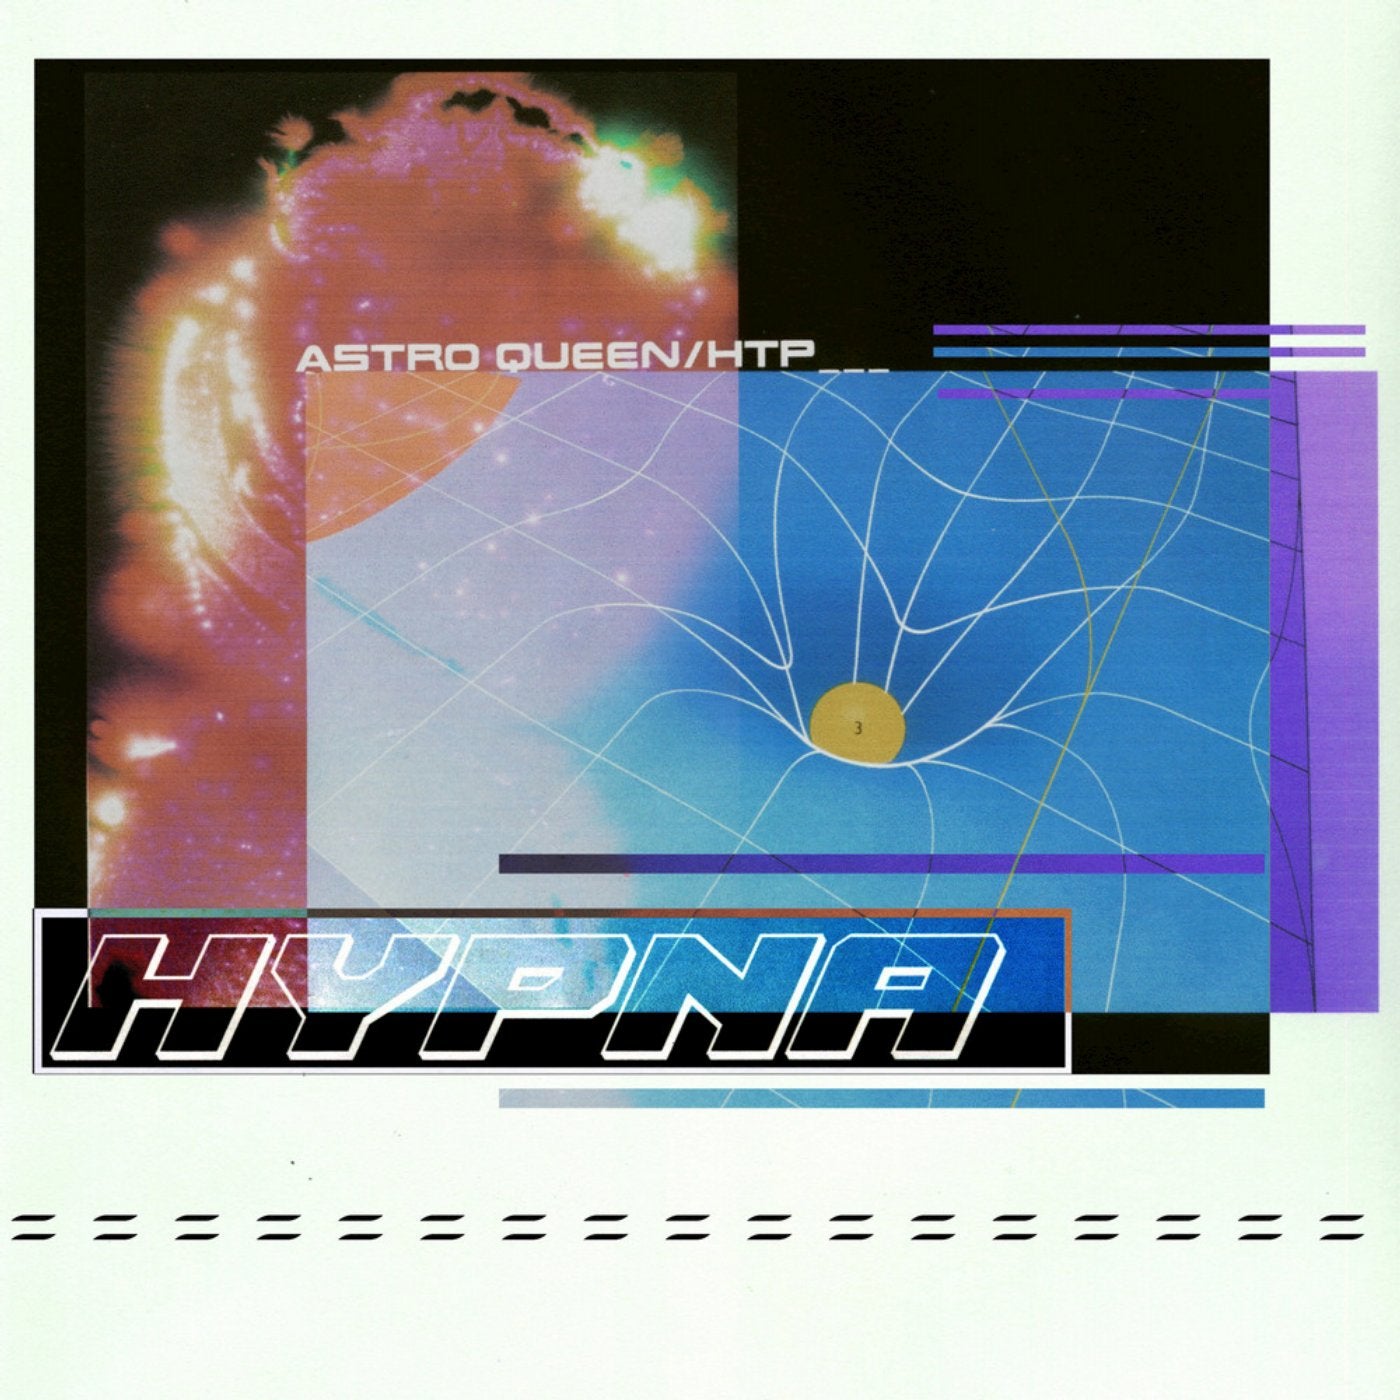 Astro Queen / HTP (Wet Mix)